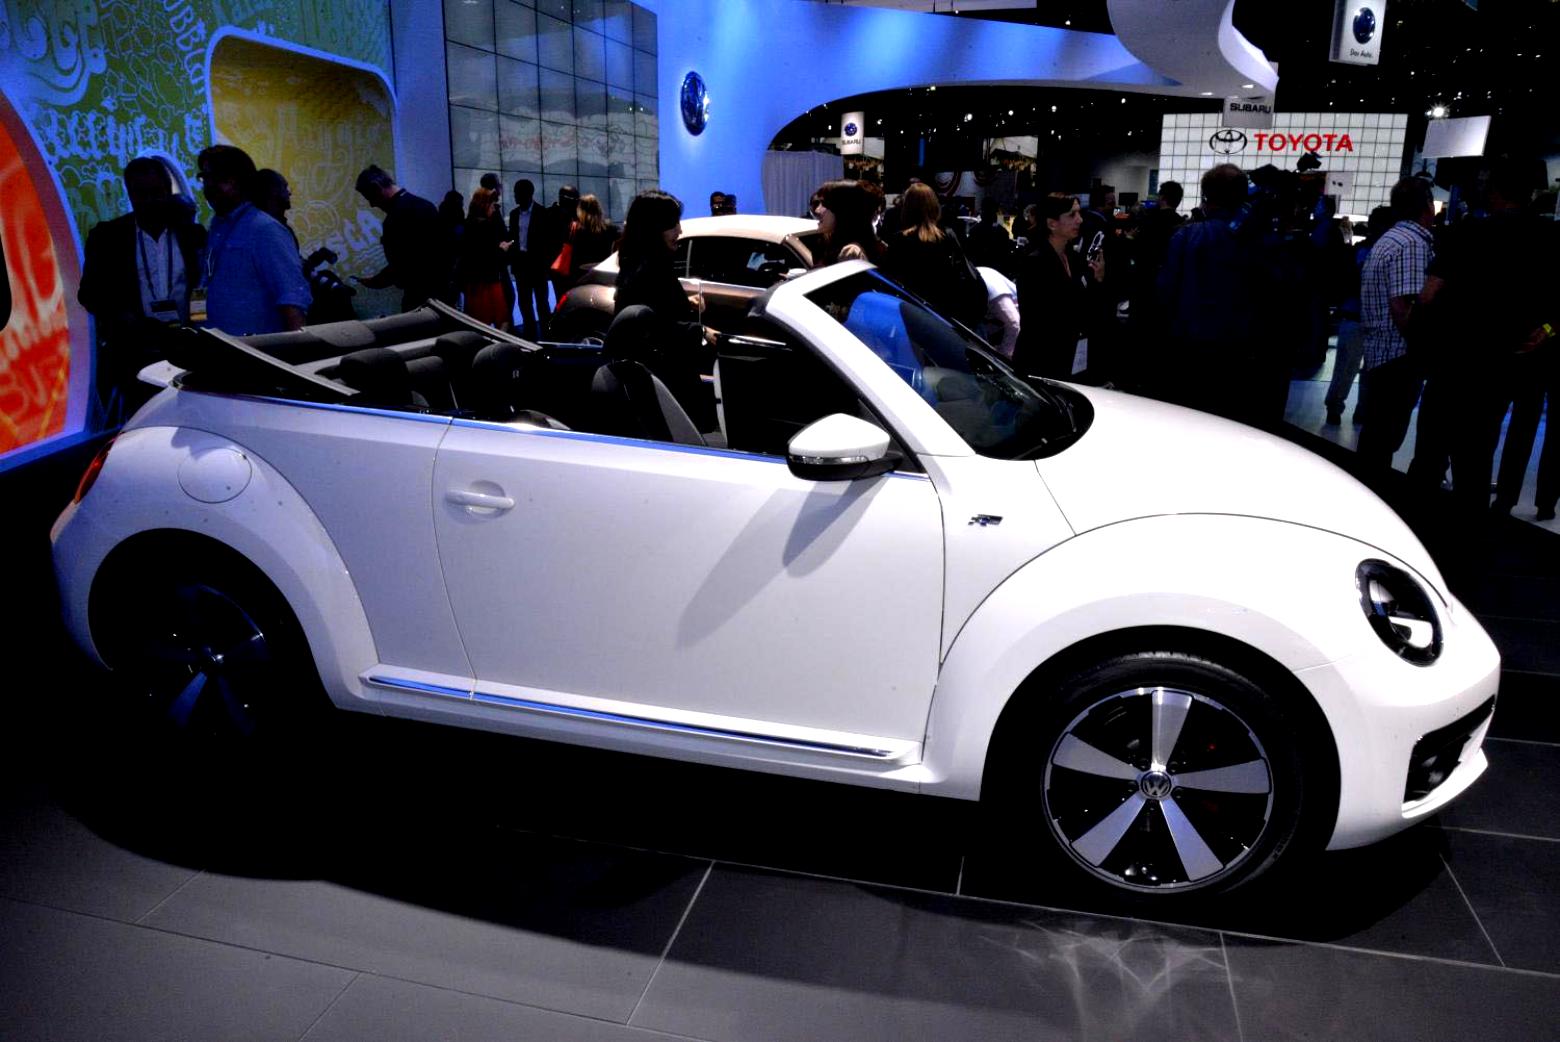 Volkswagen Beetle Cabriolet 2013 #57